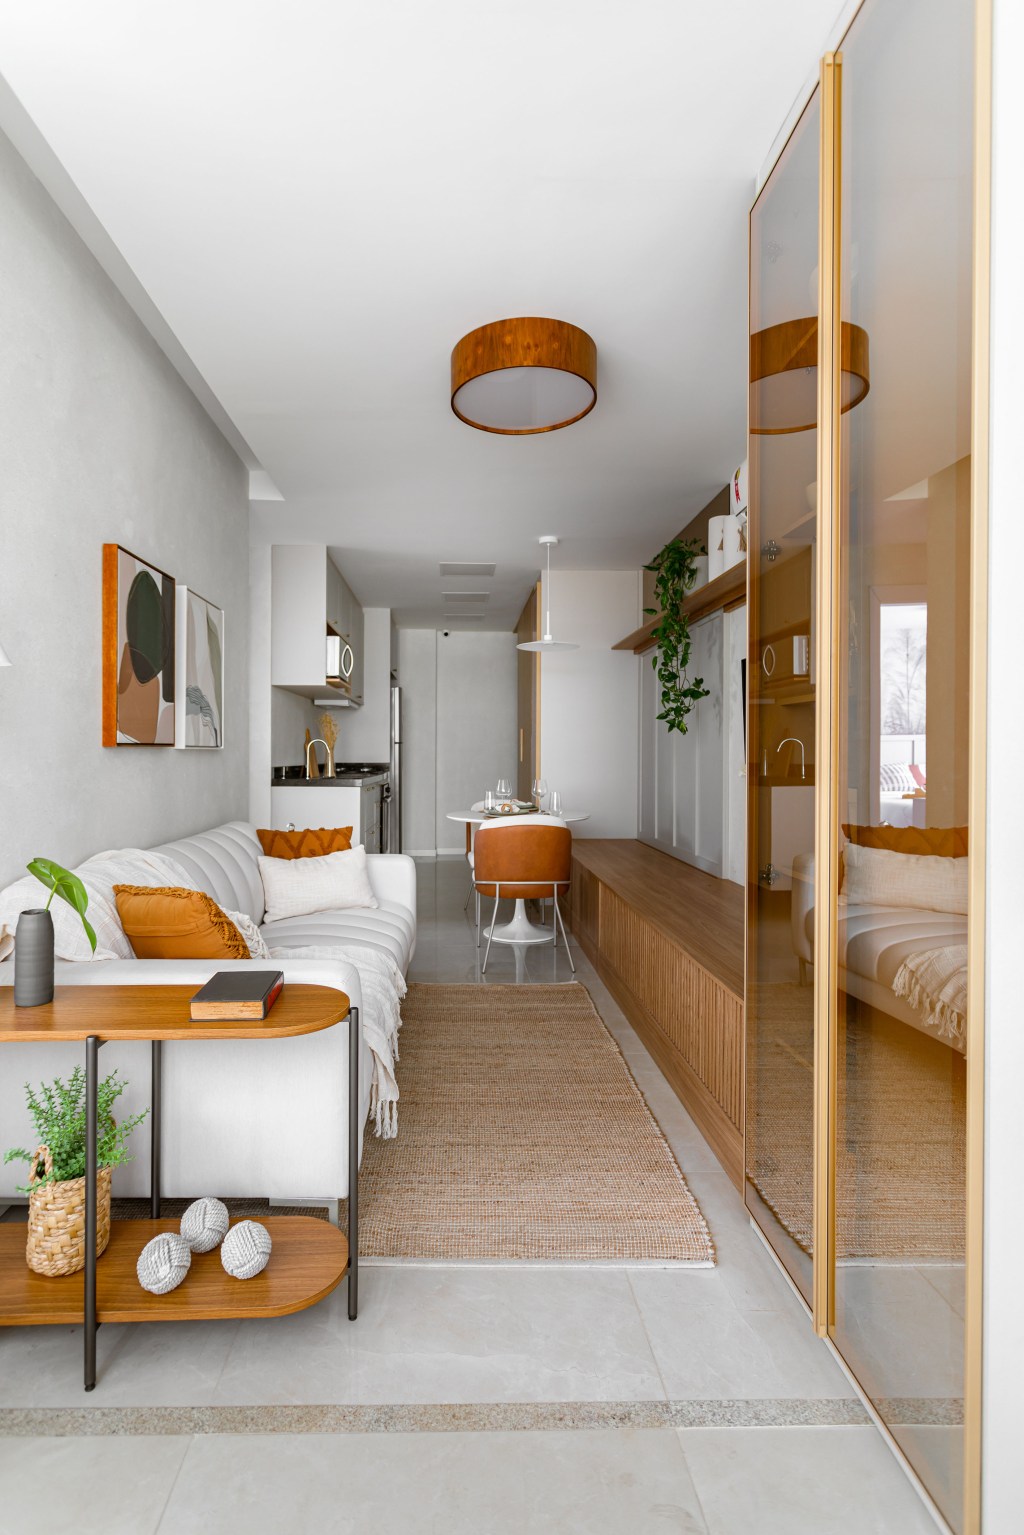 Apê compacto de 56 m² foi projetado para uma família de quatro pessoas. Projeto Nop Arquitetura. Na foto, sala com armário, rack e sofá branco.